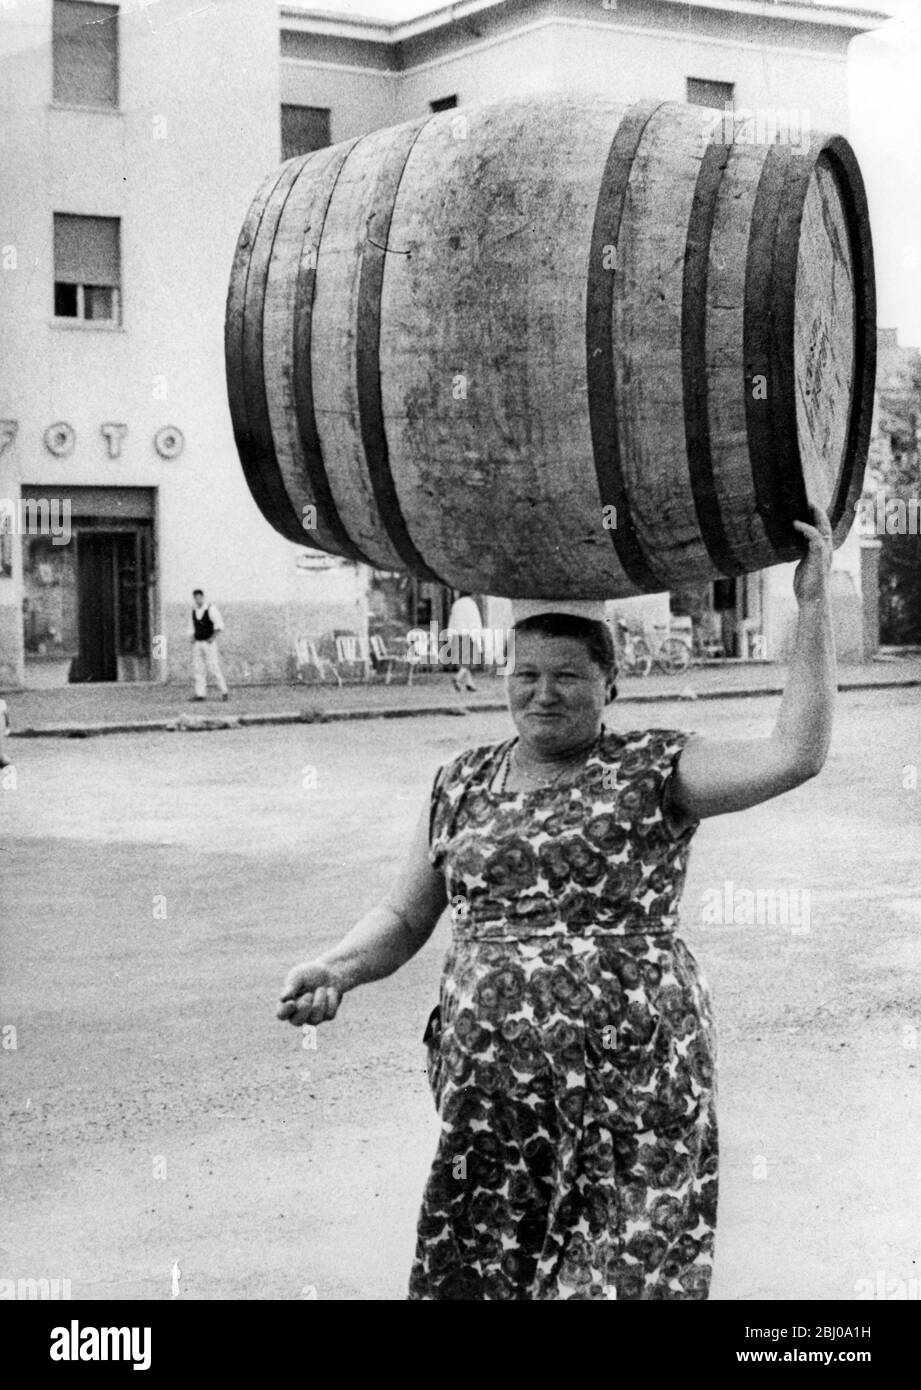 Eine Last auf ihrem Kopf - eine Frau von Marino, in der Nähe von Rom, Italien, trägt ein Fass auf ihrem Kopf in der traditionellen Weise - - 26. November 1960 Stockfoto